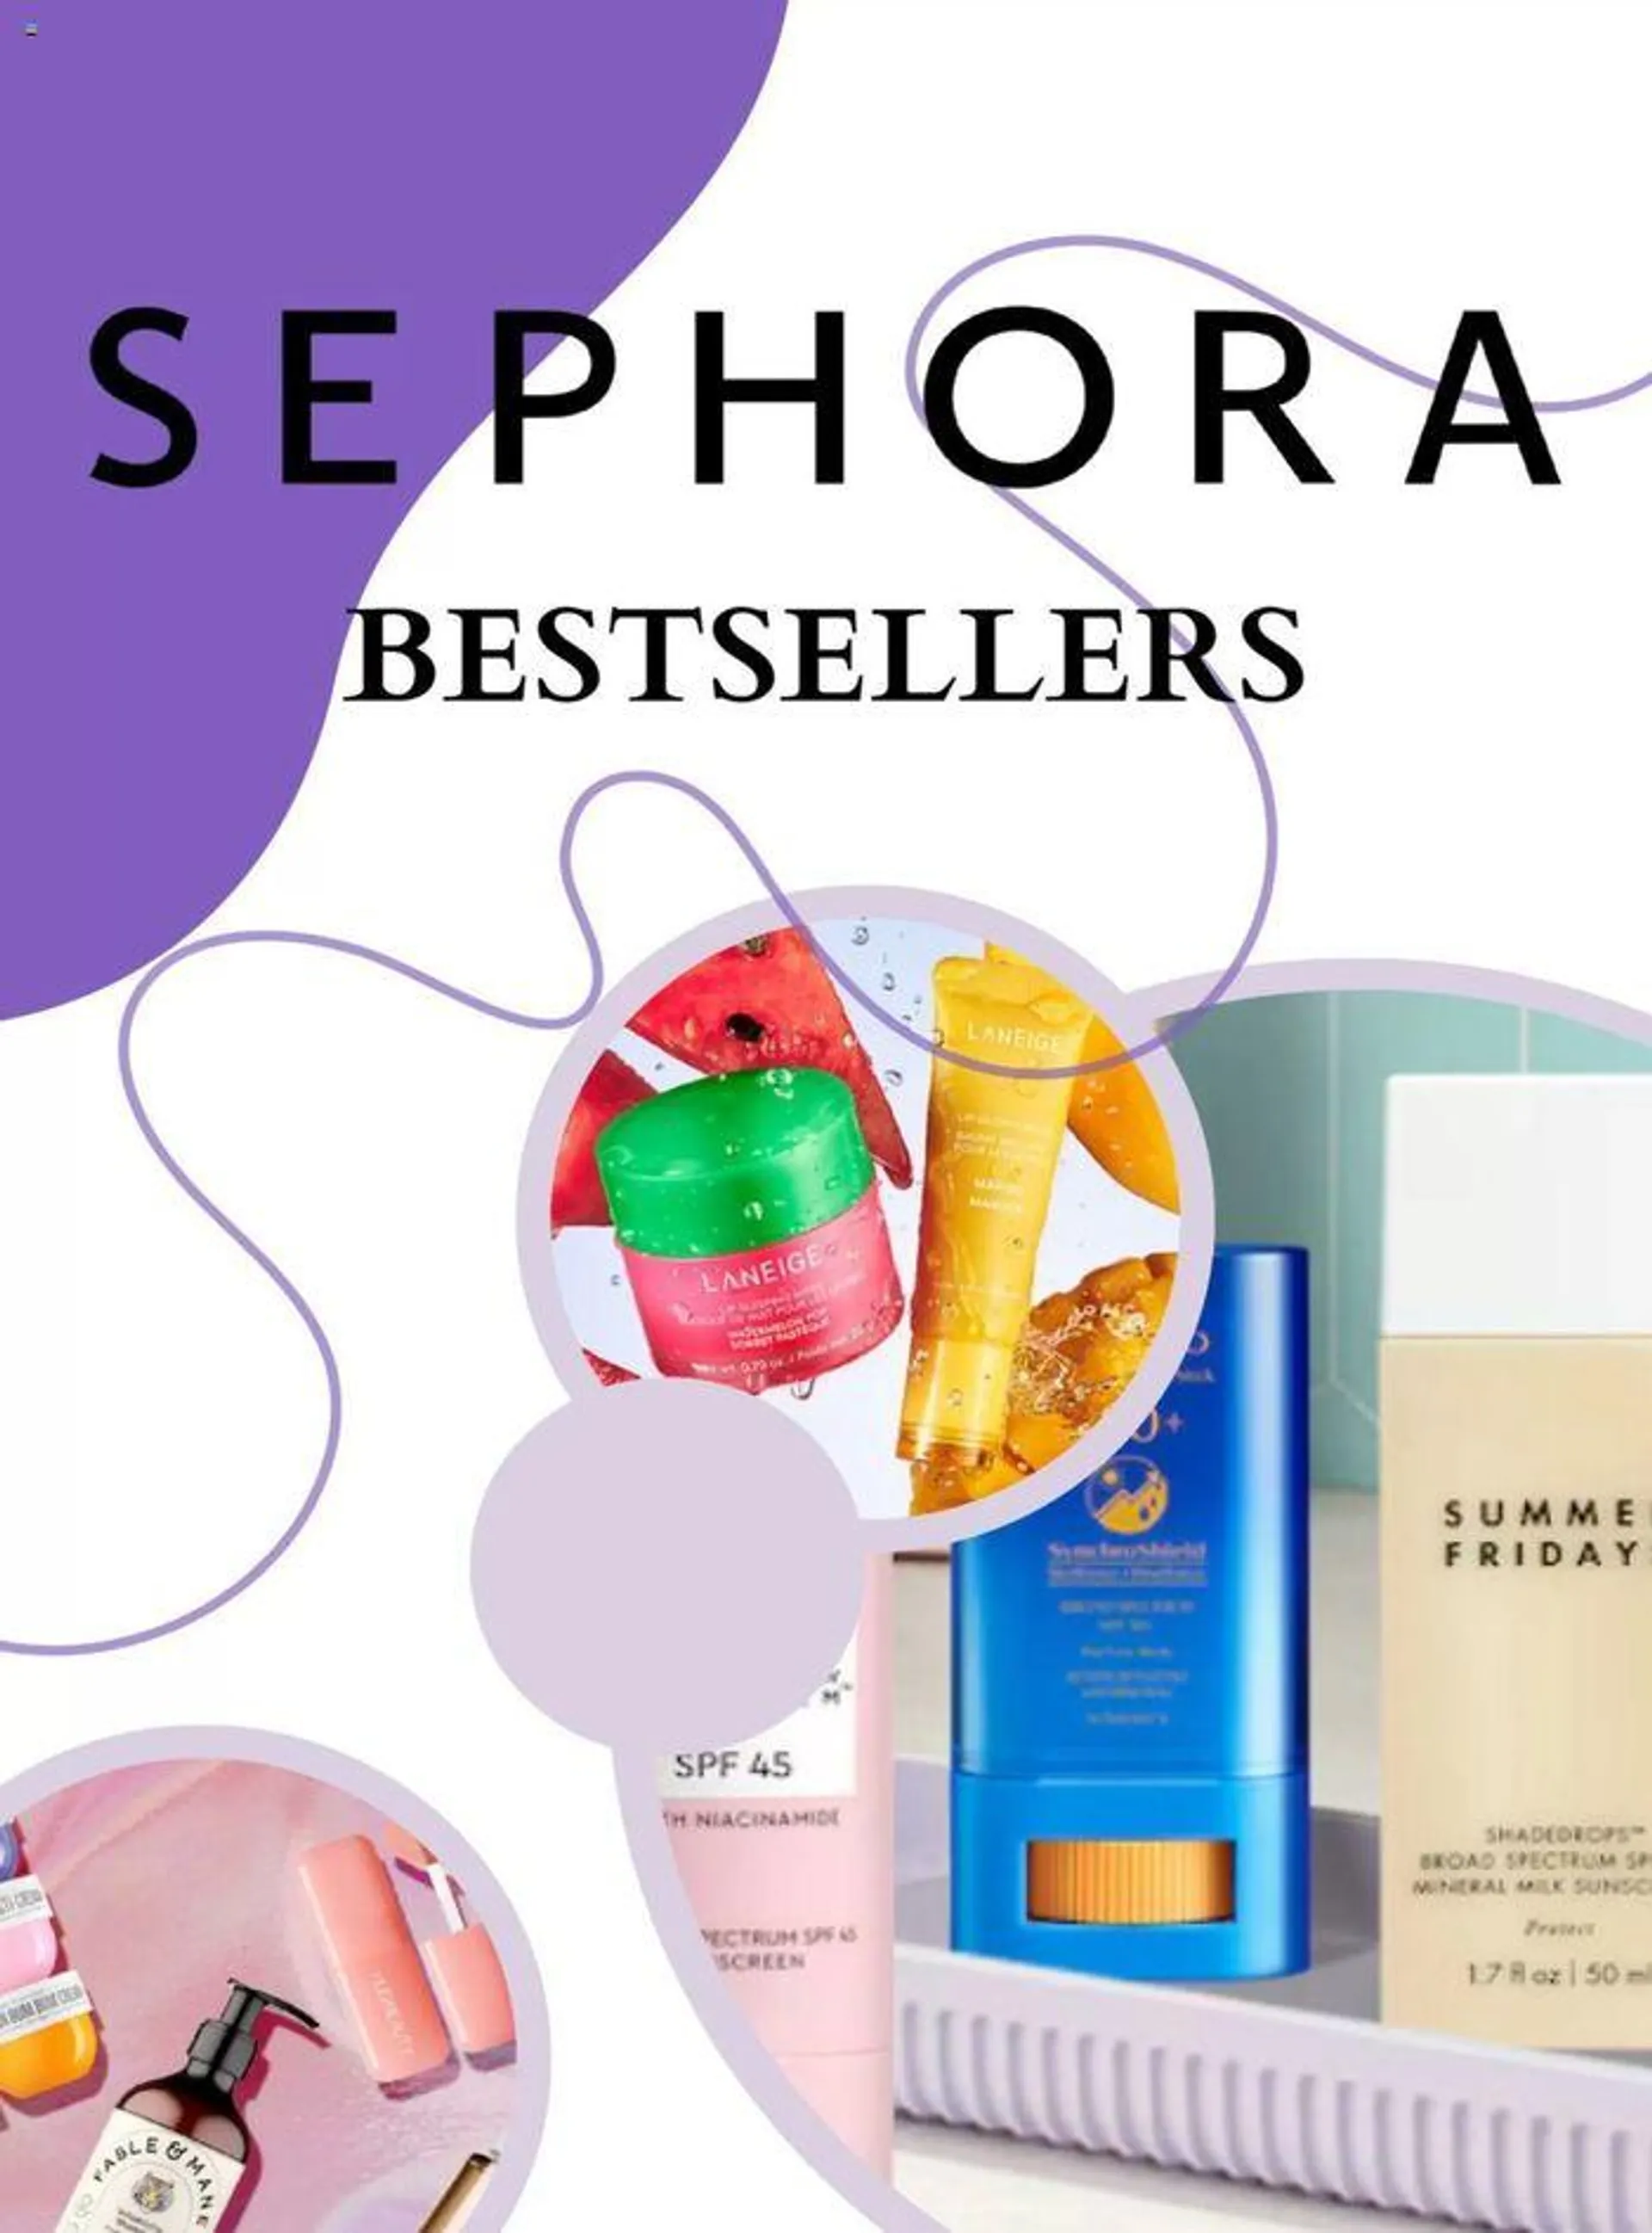 Sephora Bestsellers - 1